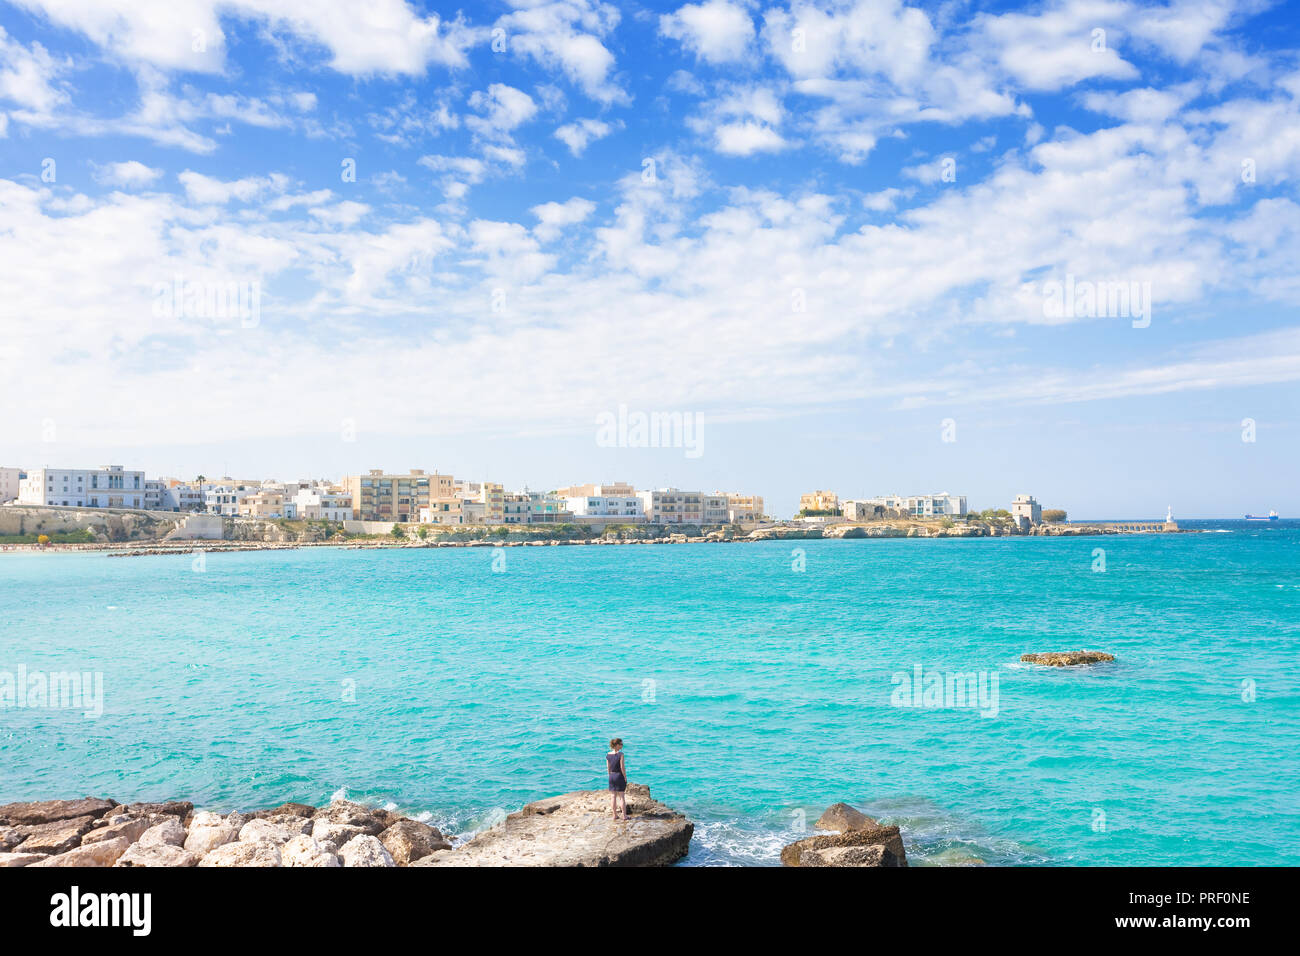 Otranto, Apulien, Italien - Genießen Sie Sommer und die Skyline von Otranto in Italien Stockfoto